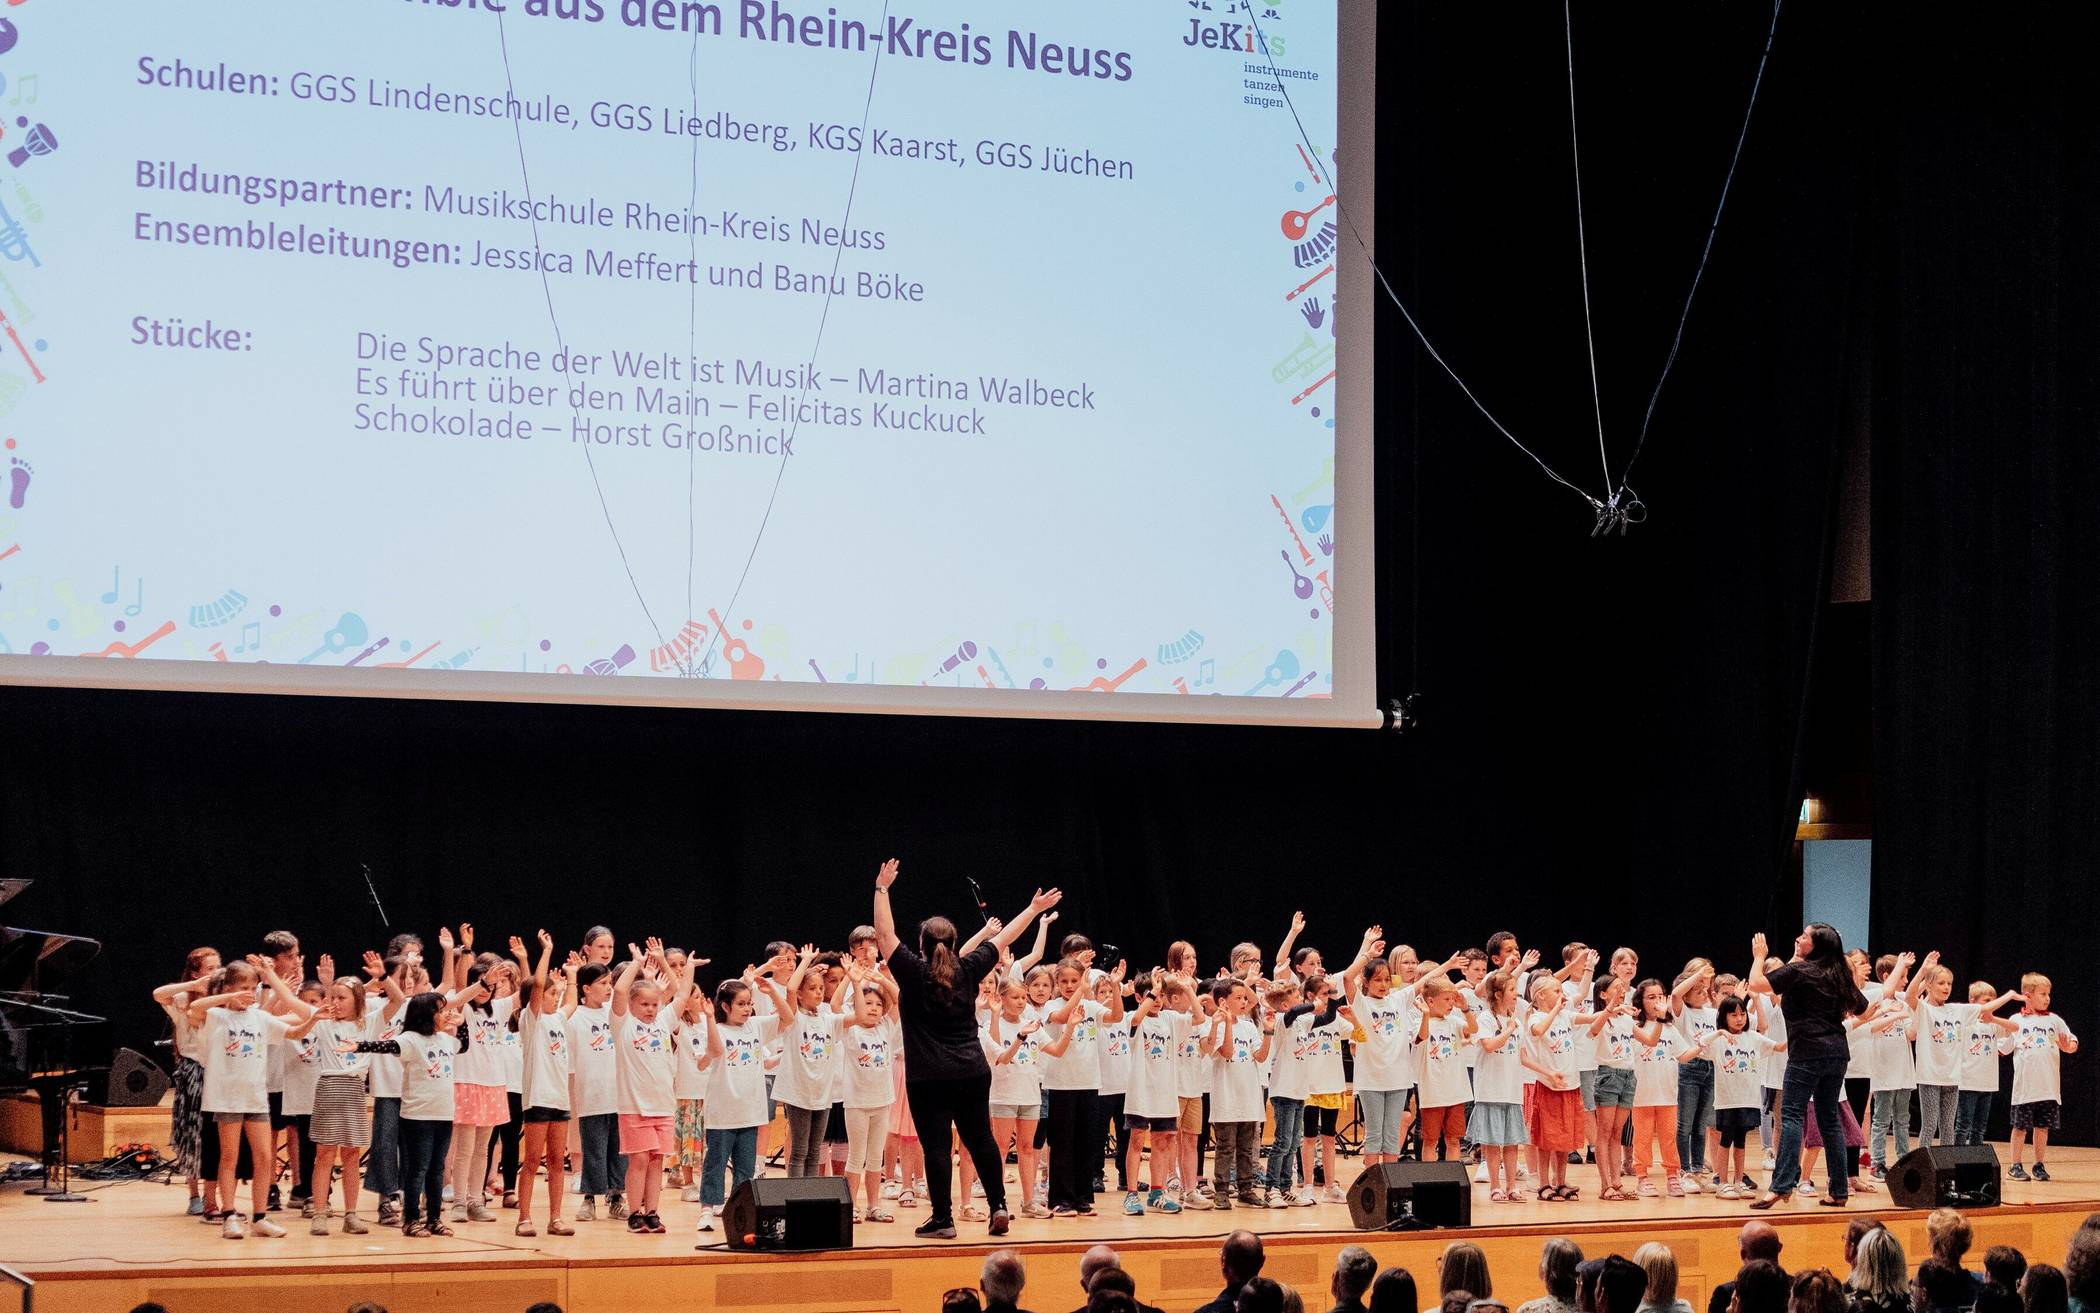 Schüler aus dem Rhein-Kreis Neuss begeistern beim NRW-weiten JeKits-Tag